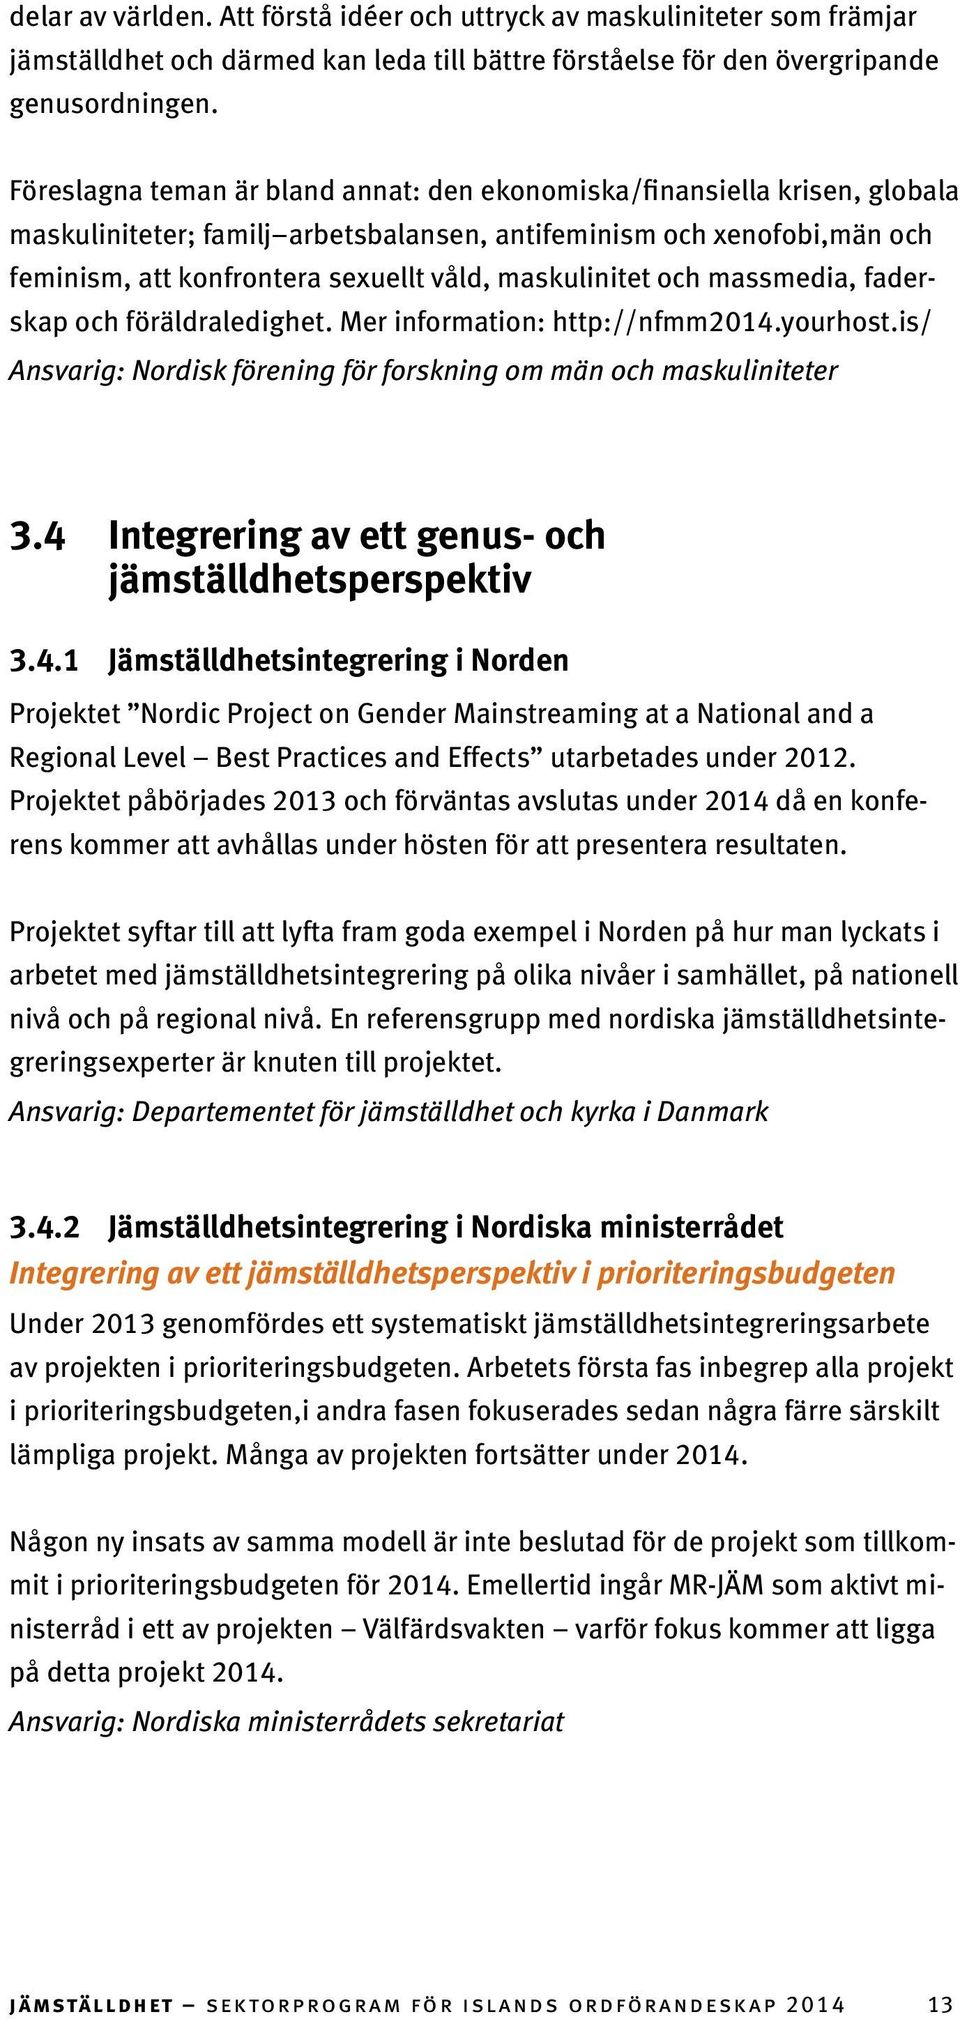 maskulinitet och massmedia, faderskap och föräldraledighet. Mer information: http://nfmm2014.yourhost.is/ Ansvarig: Nordisk förening för forskning om män och maskuliniteter 3.